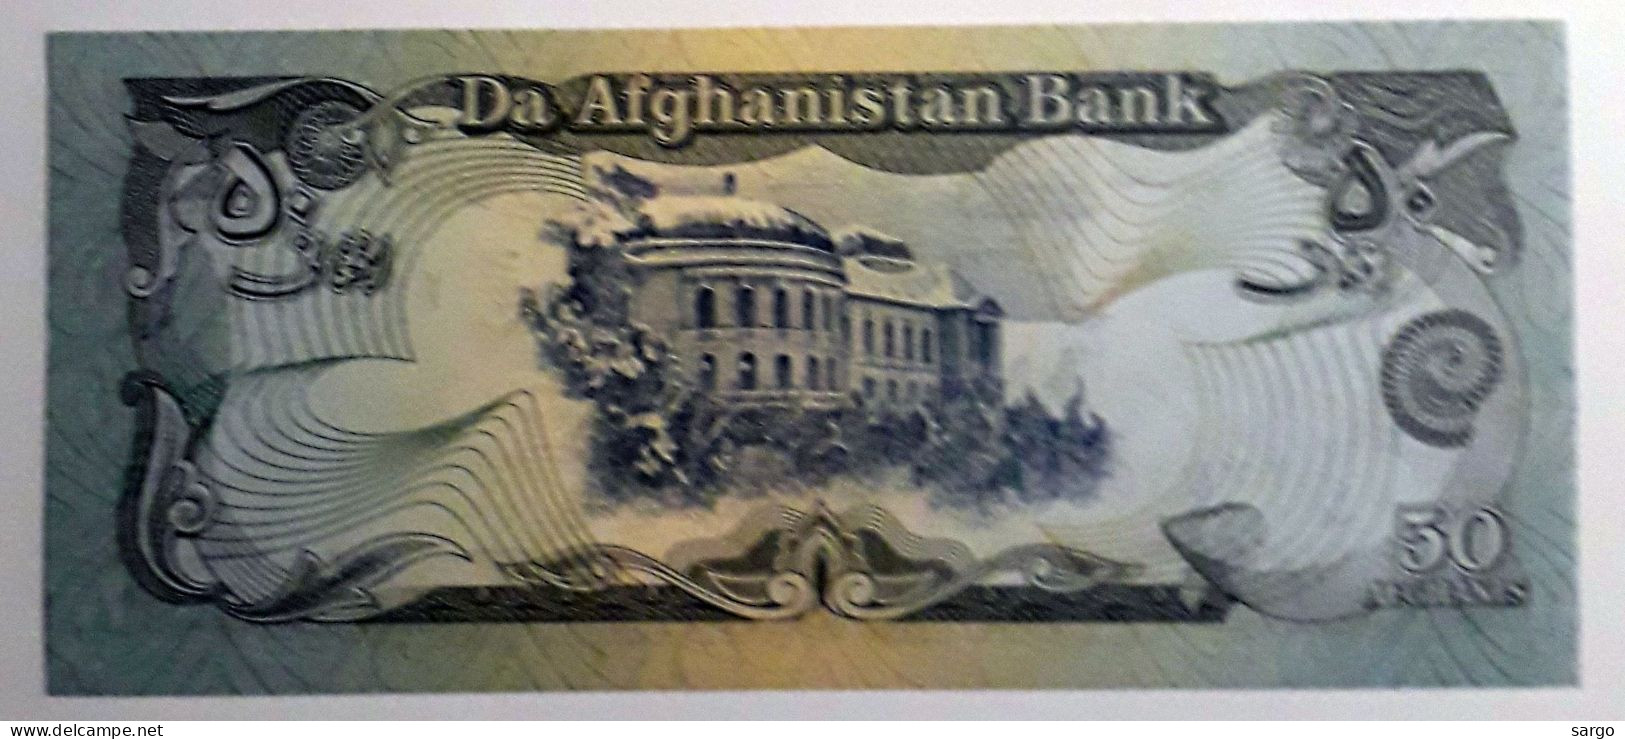 AFGHANISTAN - 50 AFGHANIS - 1979-1991  - UNC - P 57 - BANKNOTES - PAPER MONEY - CARTAMONETA - - Afghanistan